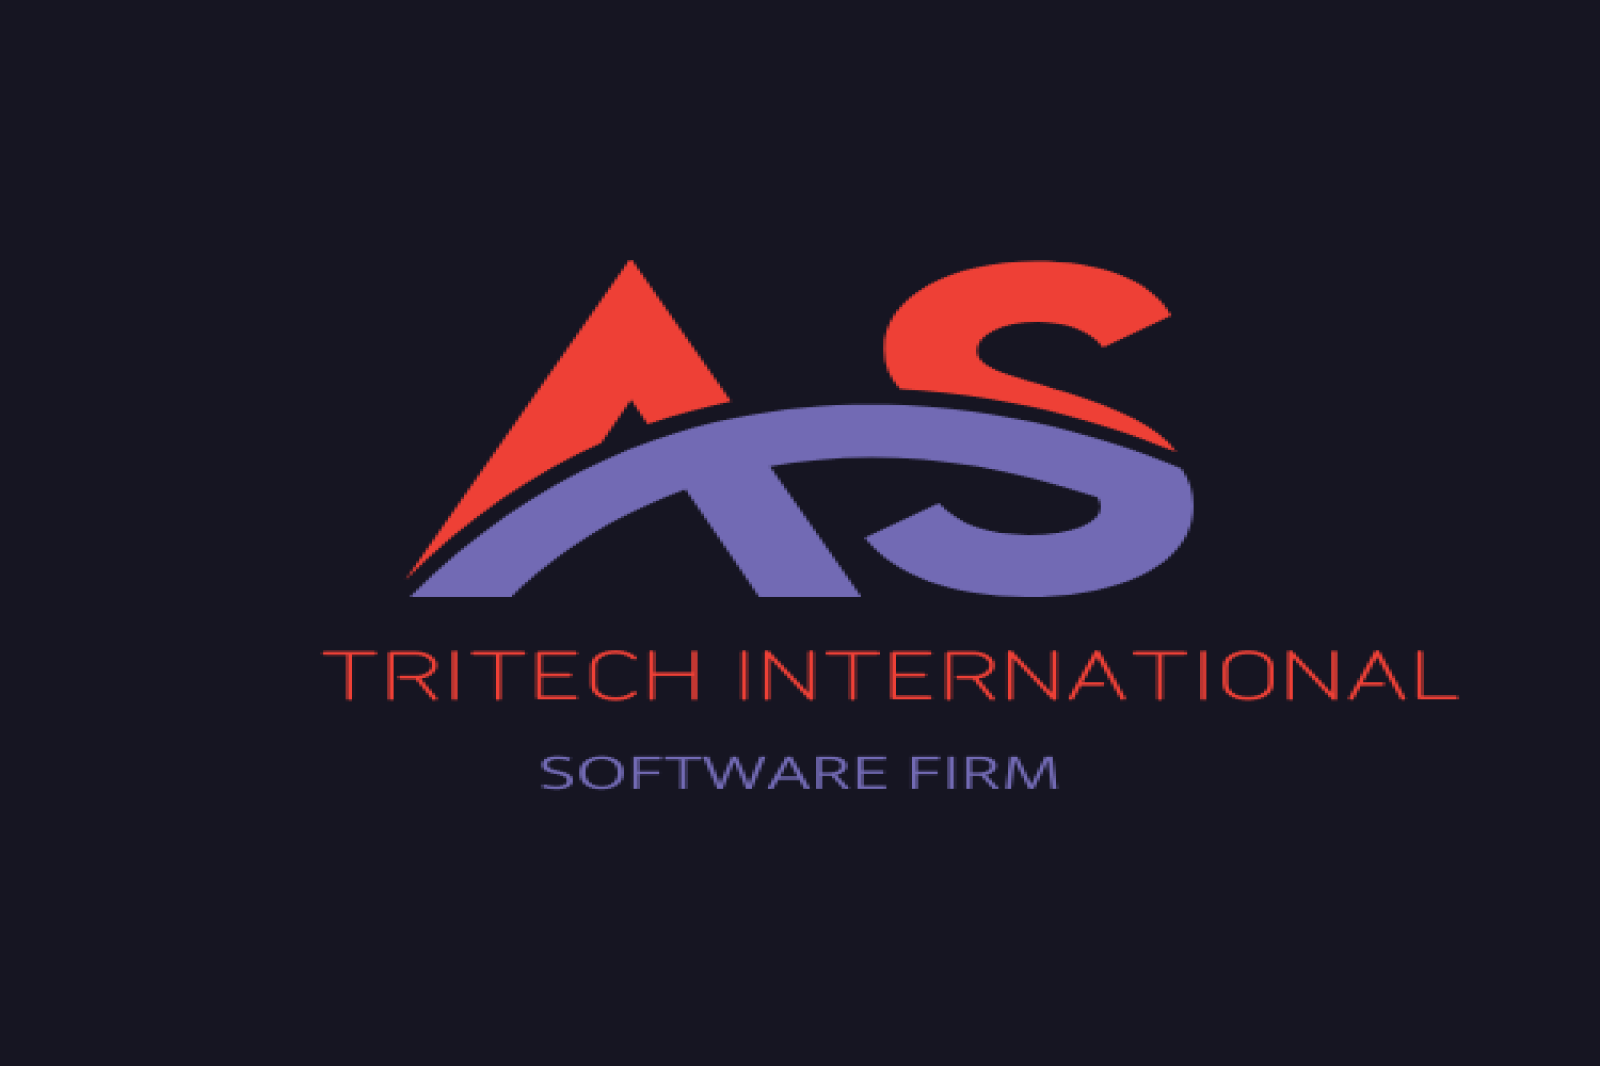 TriTech International Software Firm